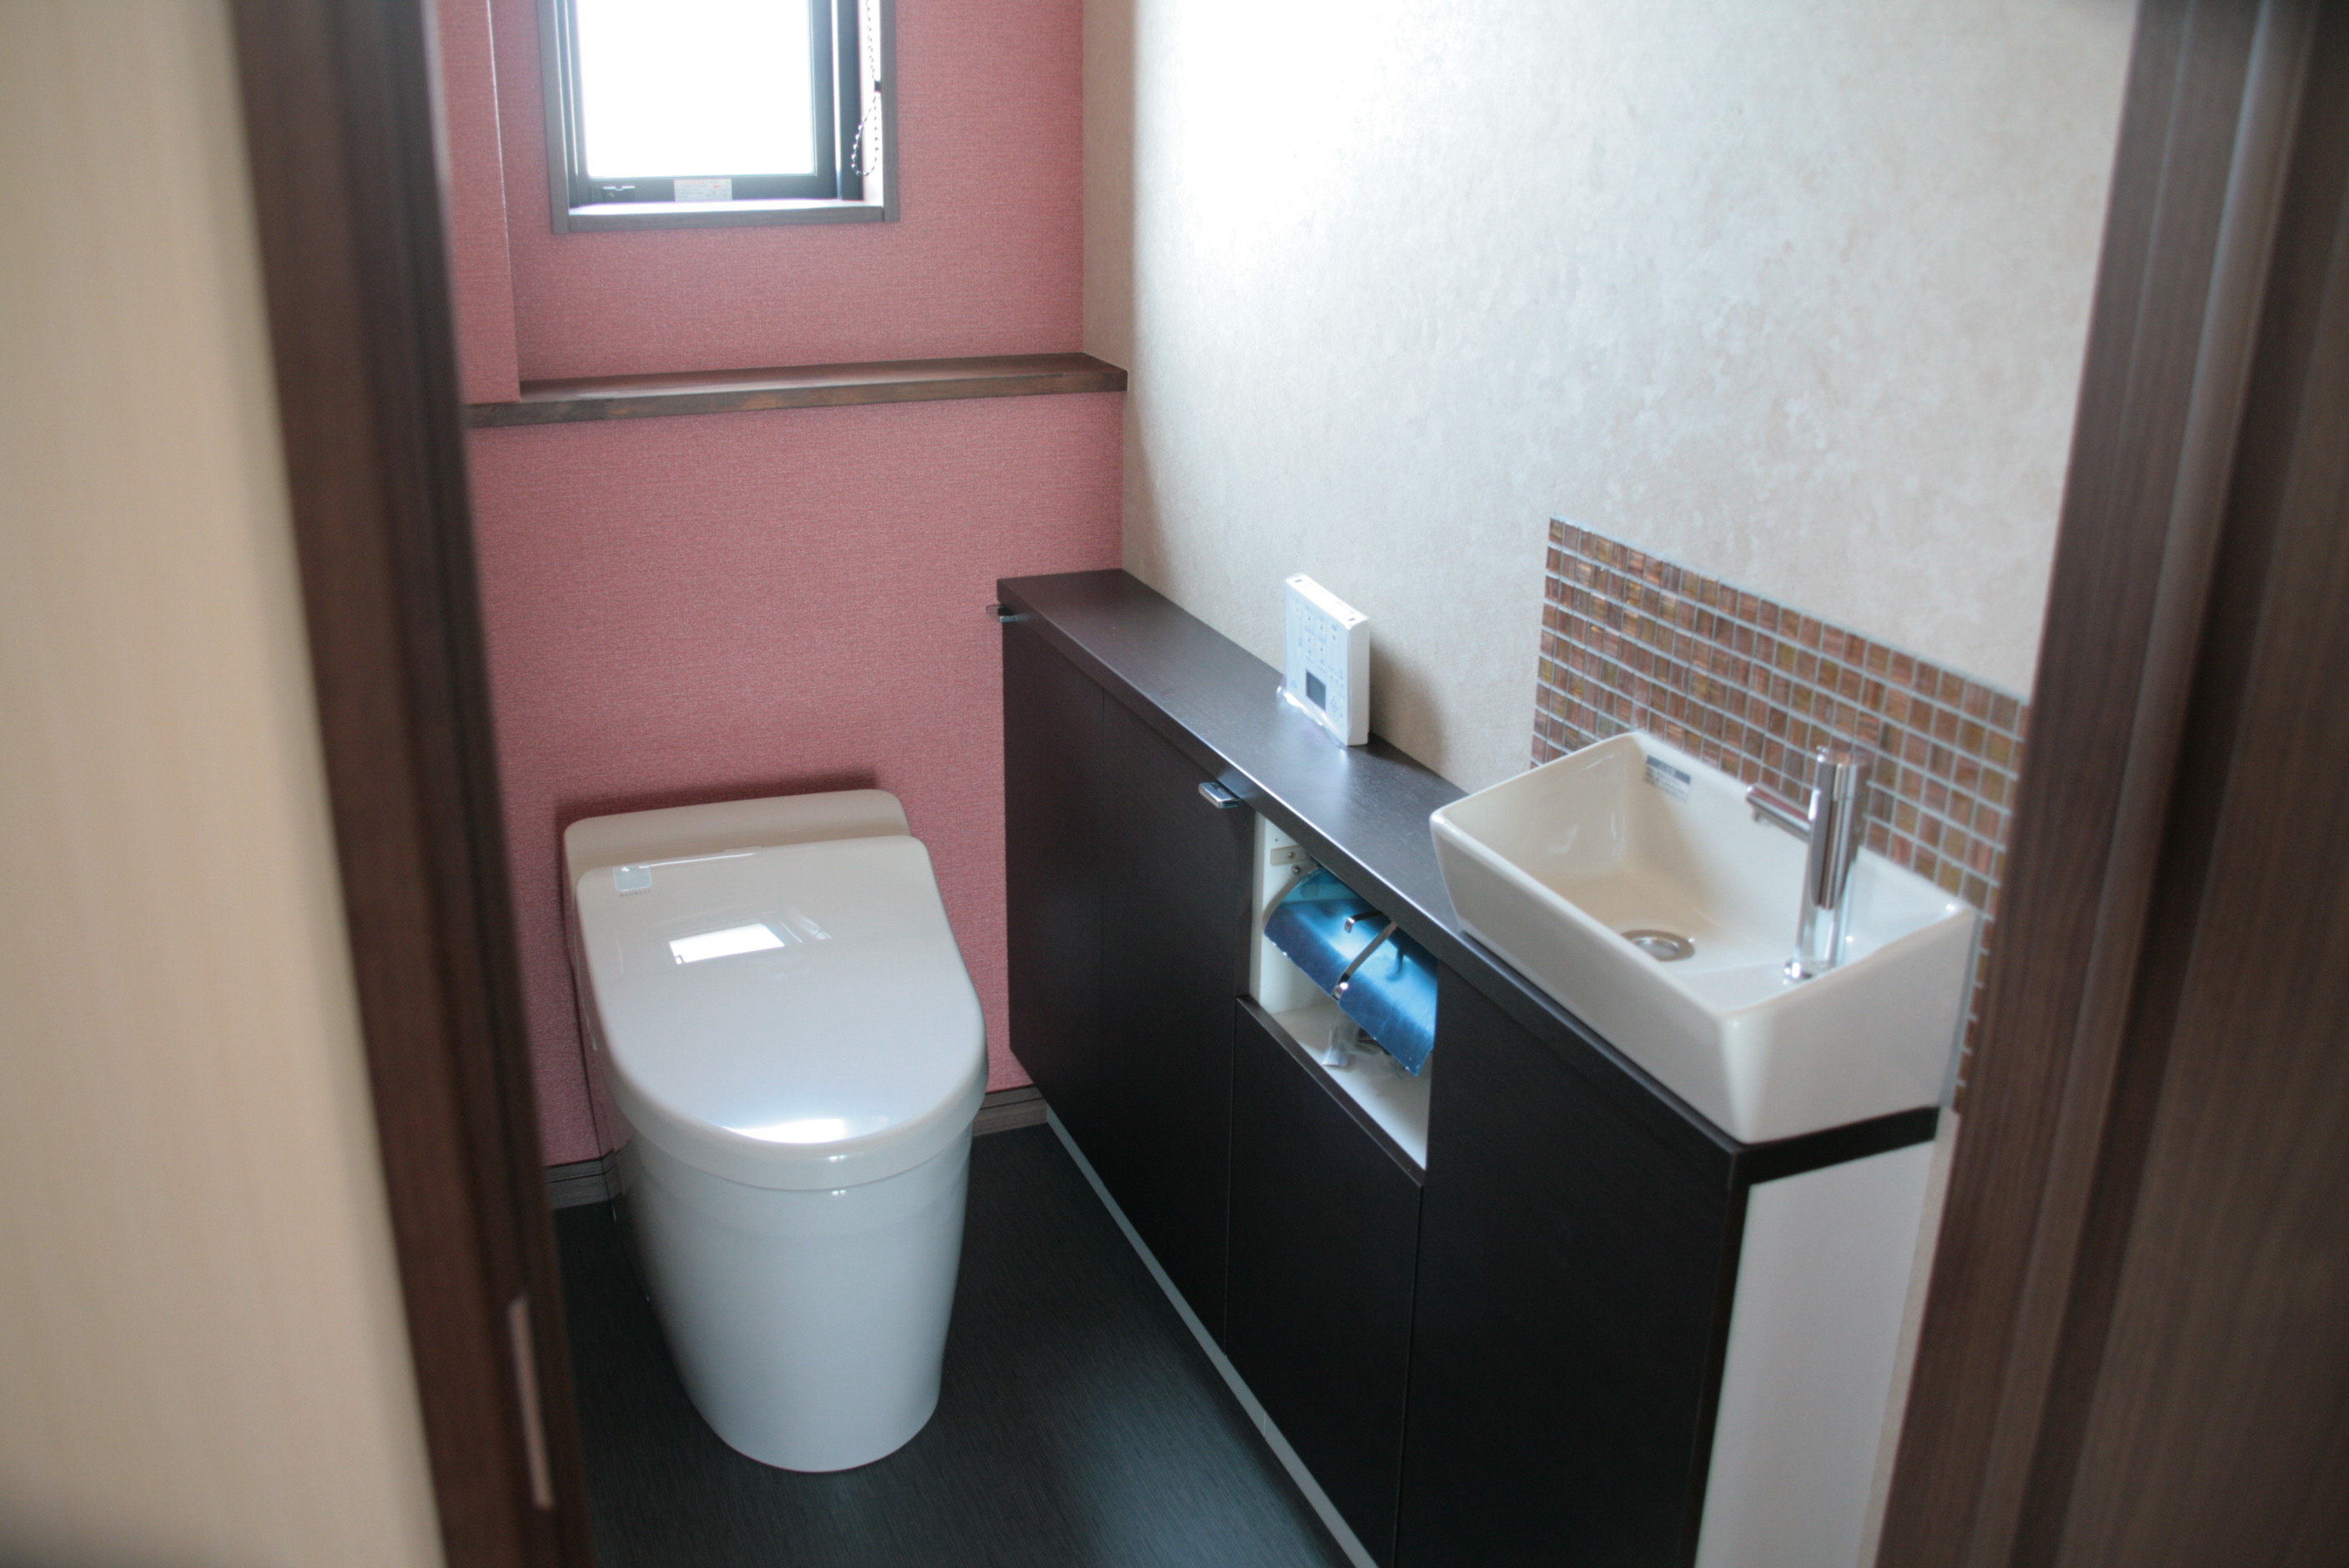 タンクレストイレと手洗い器